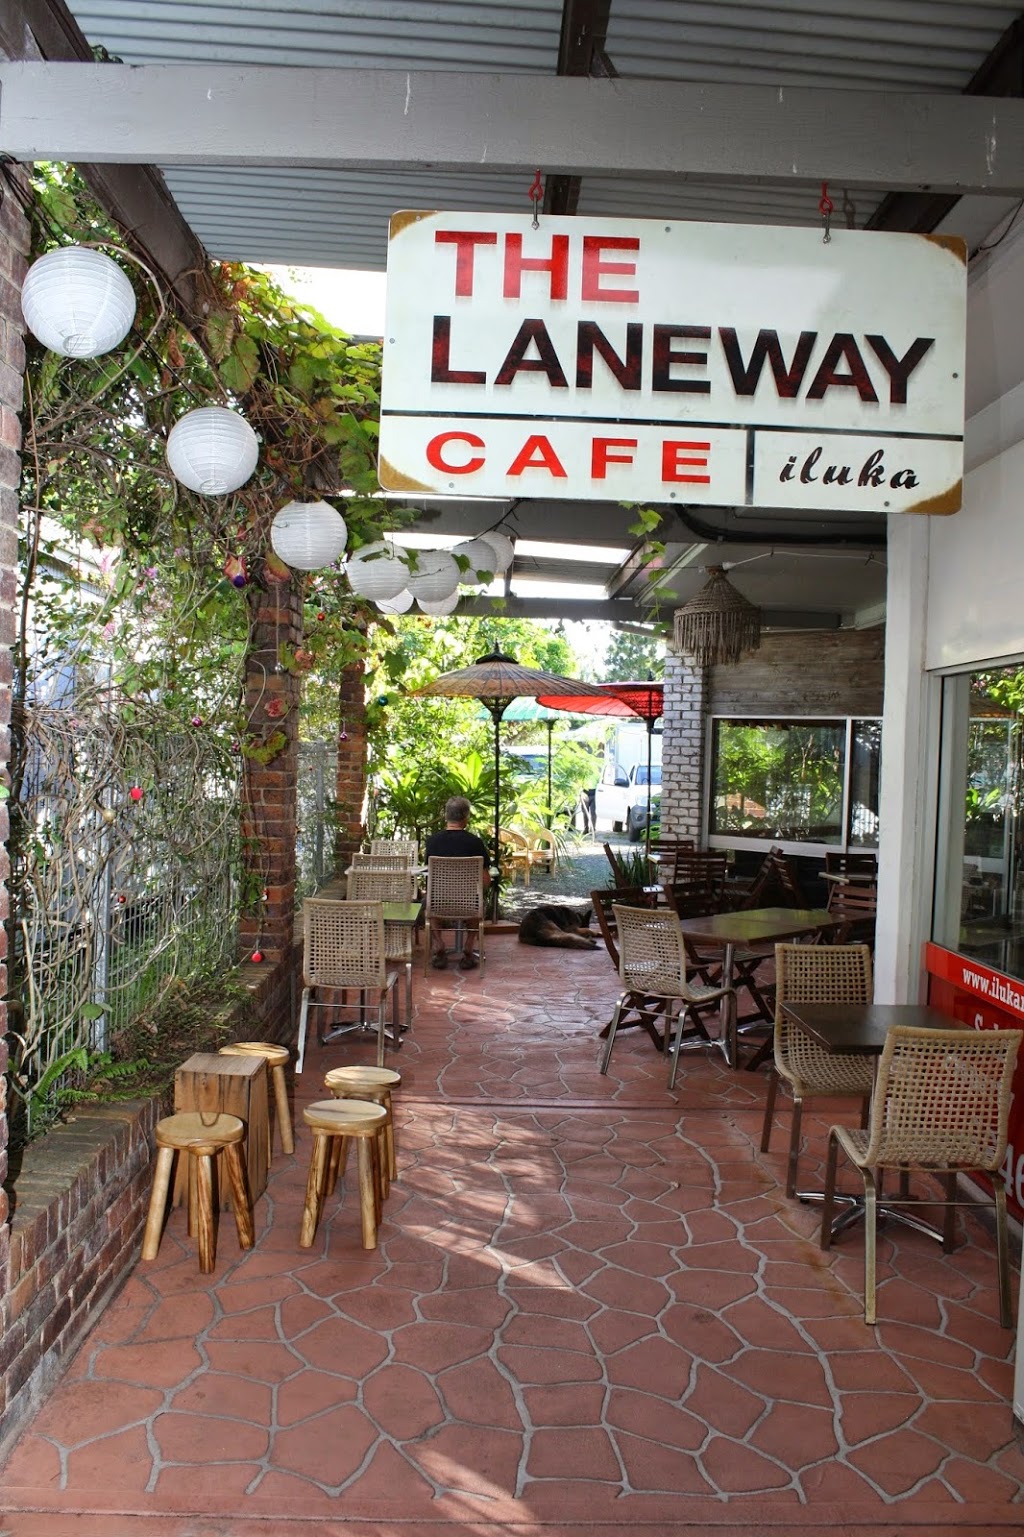 The Laneway Cafe Iluka | cafe | 3/63 Charles St, Iluka NSW 2466, Australia | 0266457022 OR +61 2 6645 7022